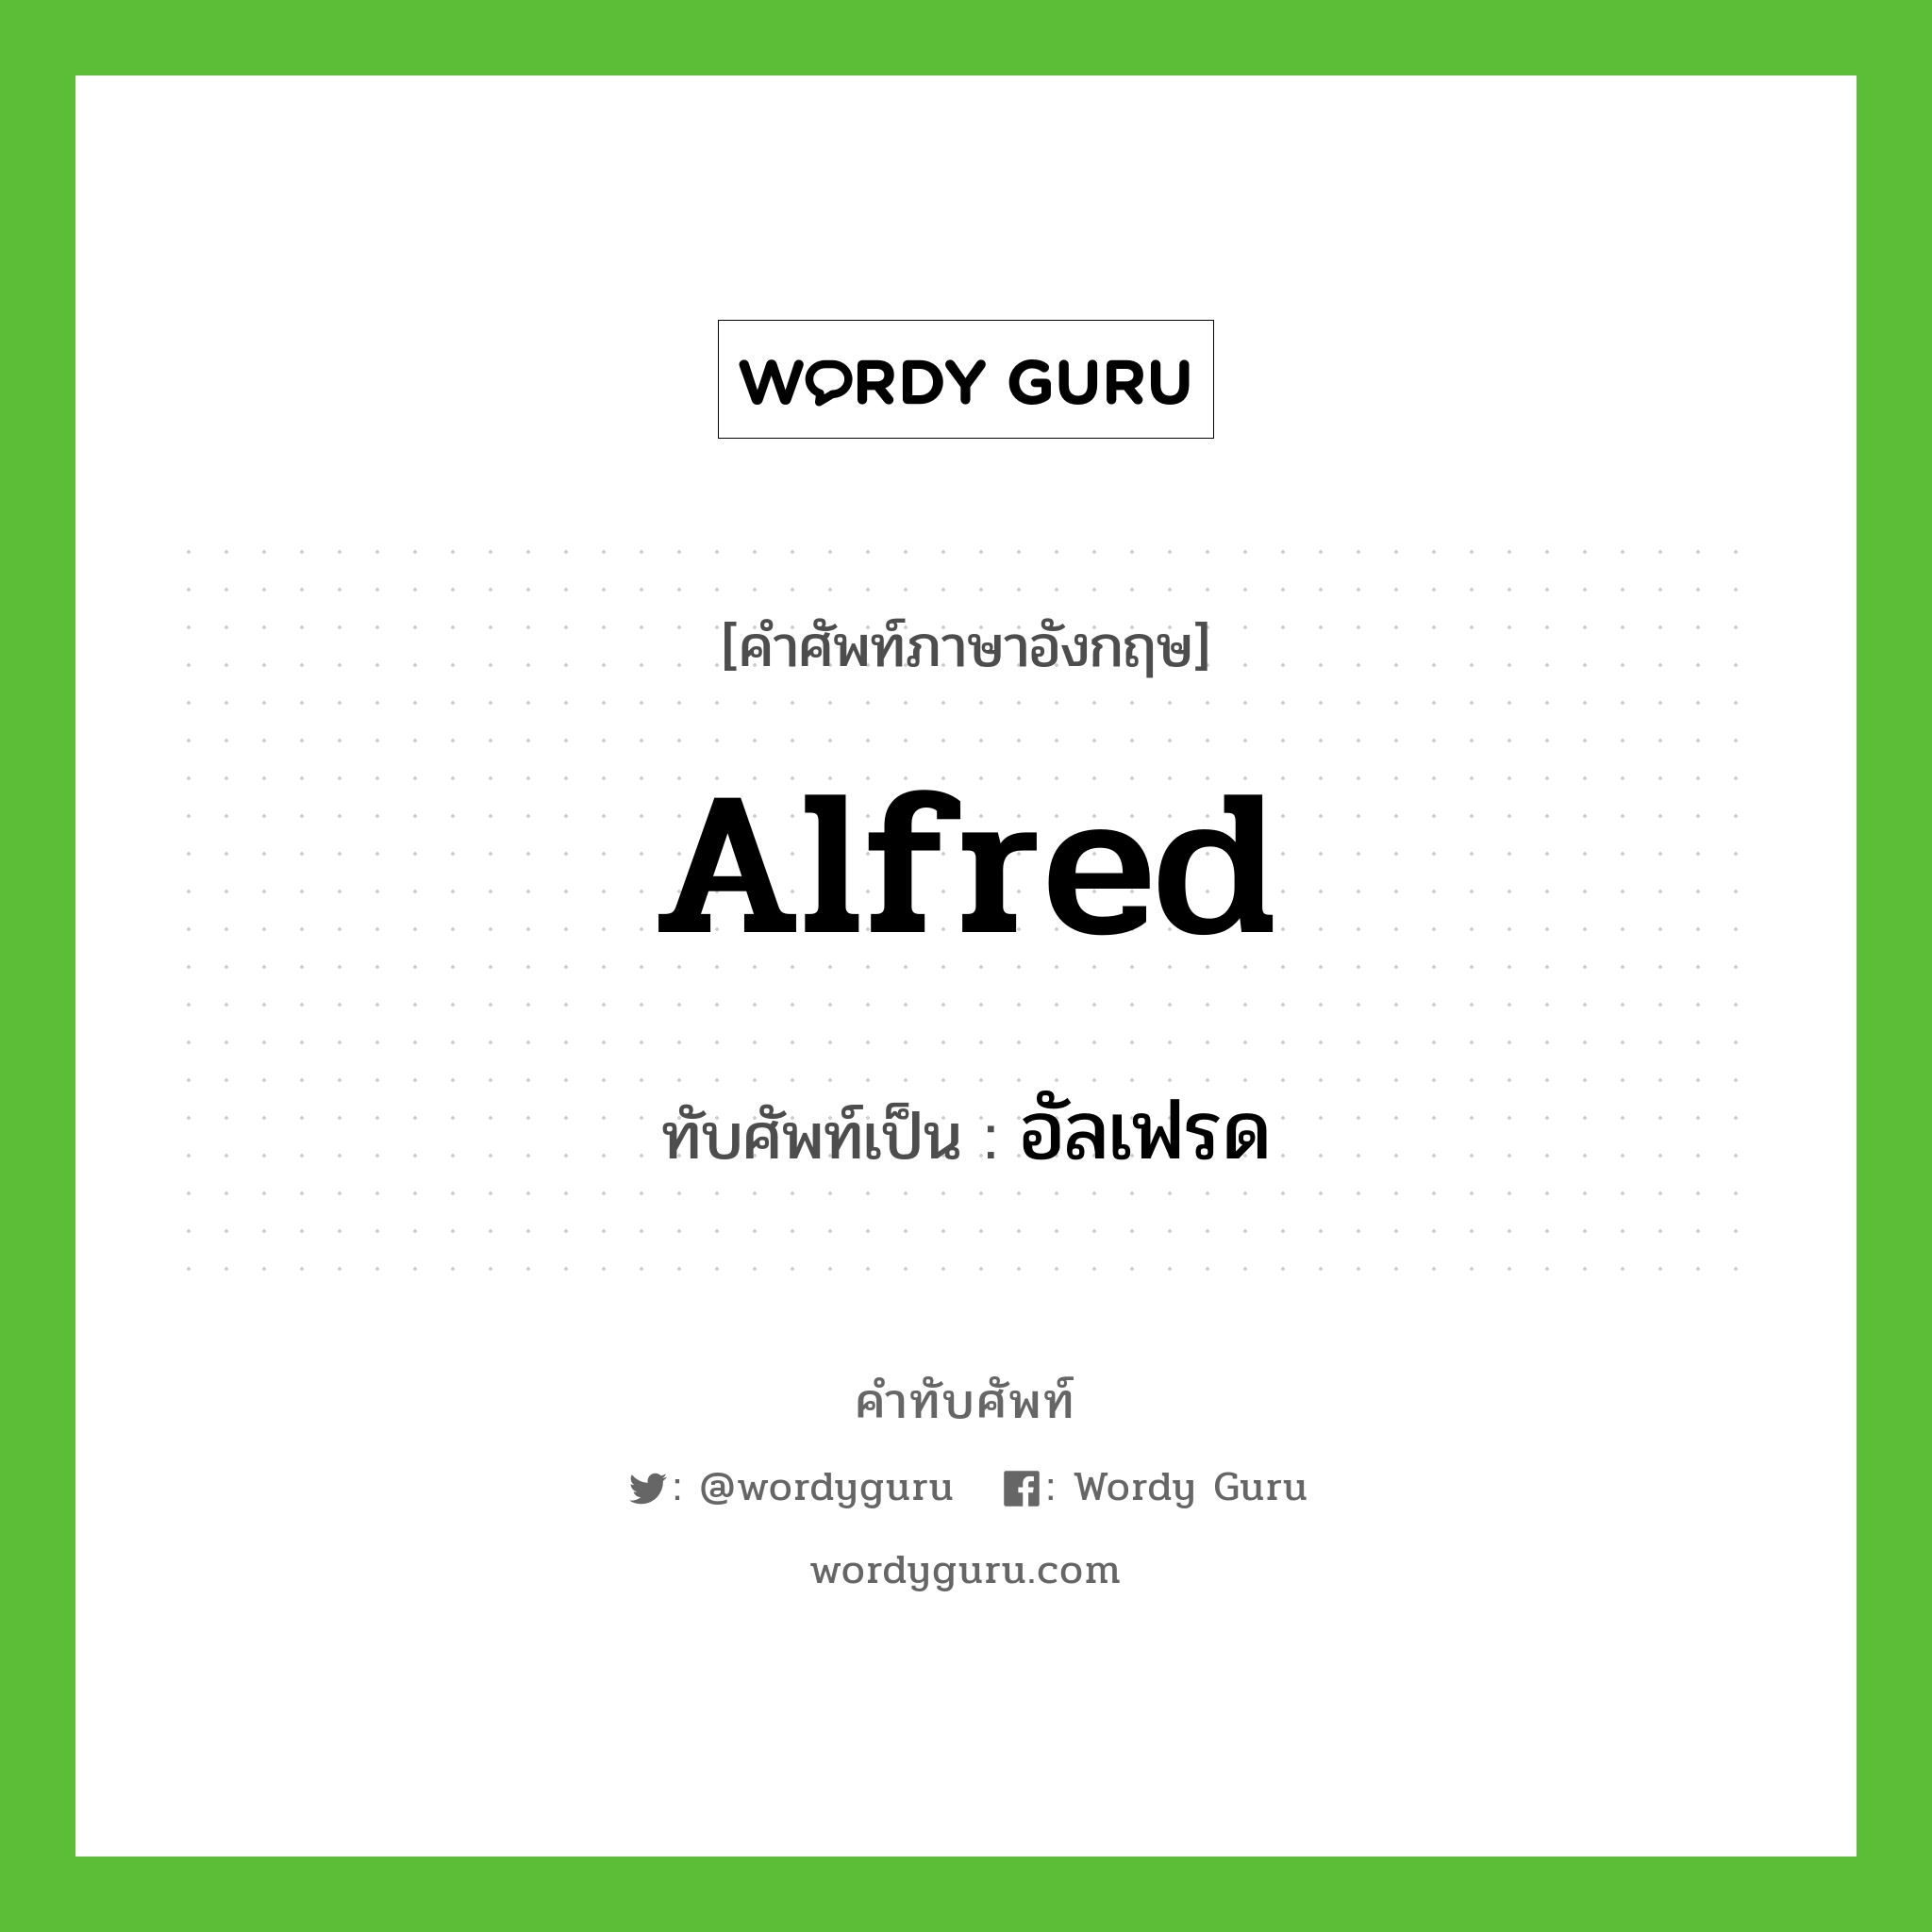 อัลเฟรด เขียนอย่างไร?, คำศัพท์ภาษาอังกฤษ อัลเฟรด ทับศัพท์เป็น Alfred